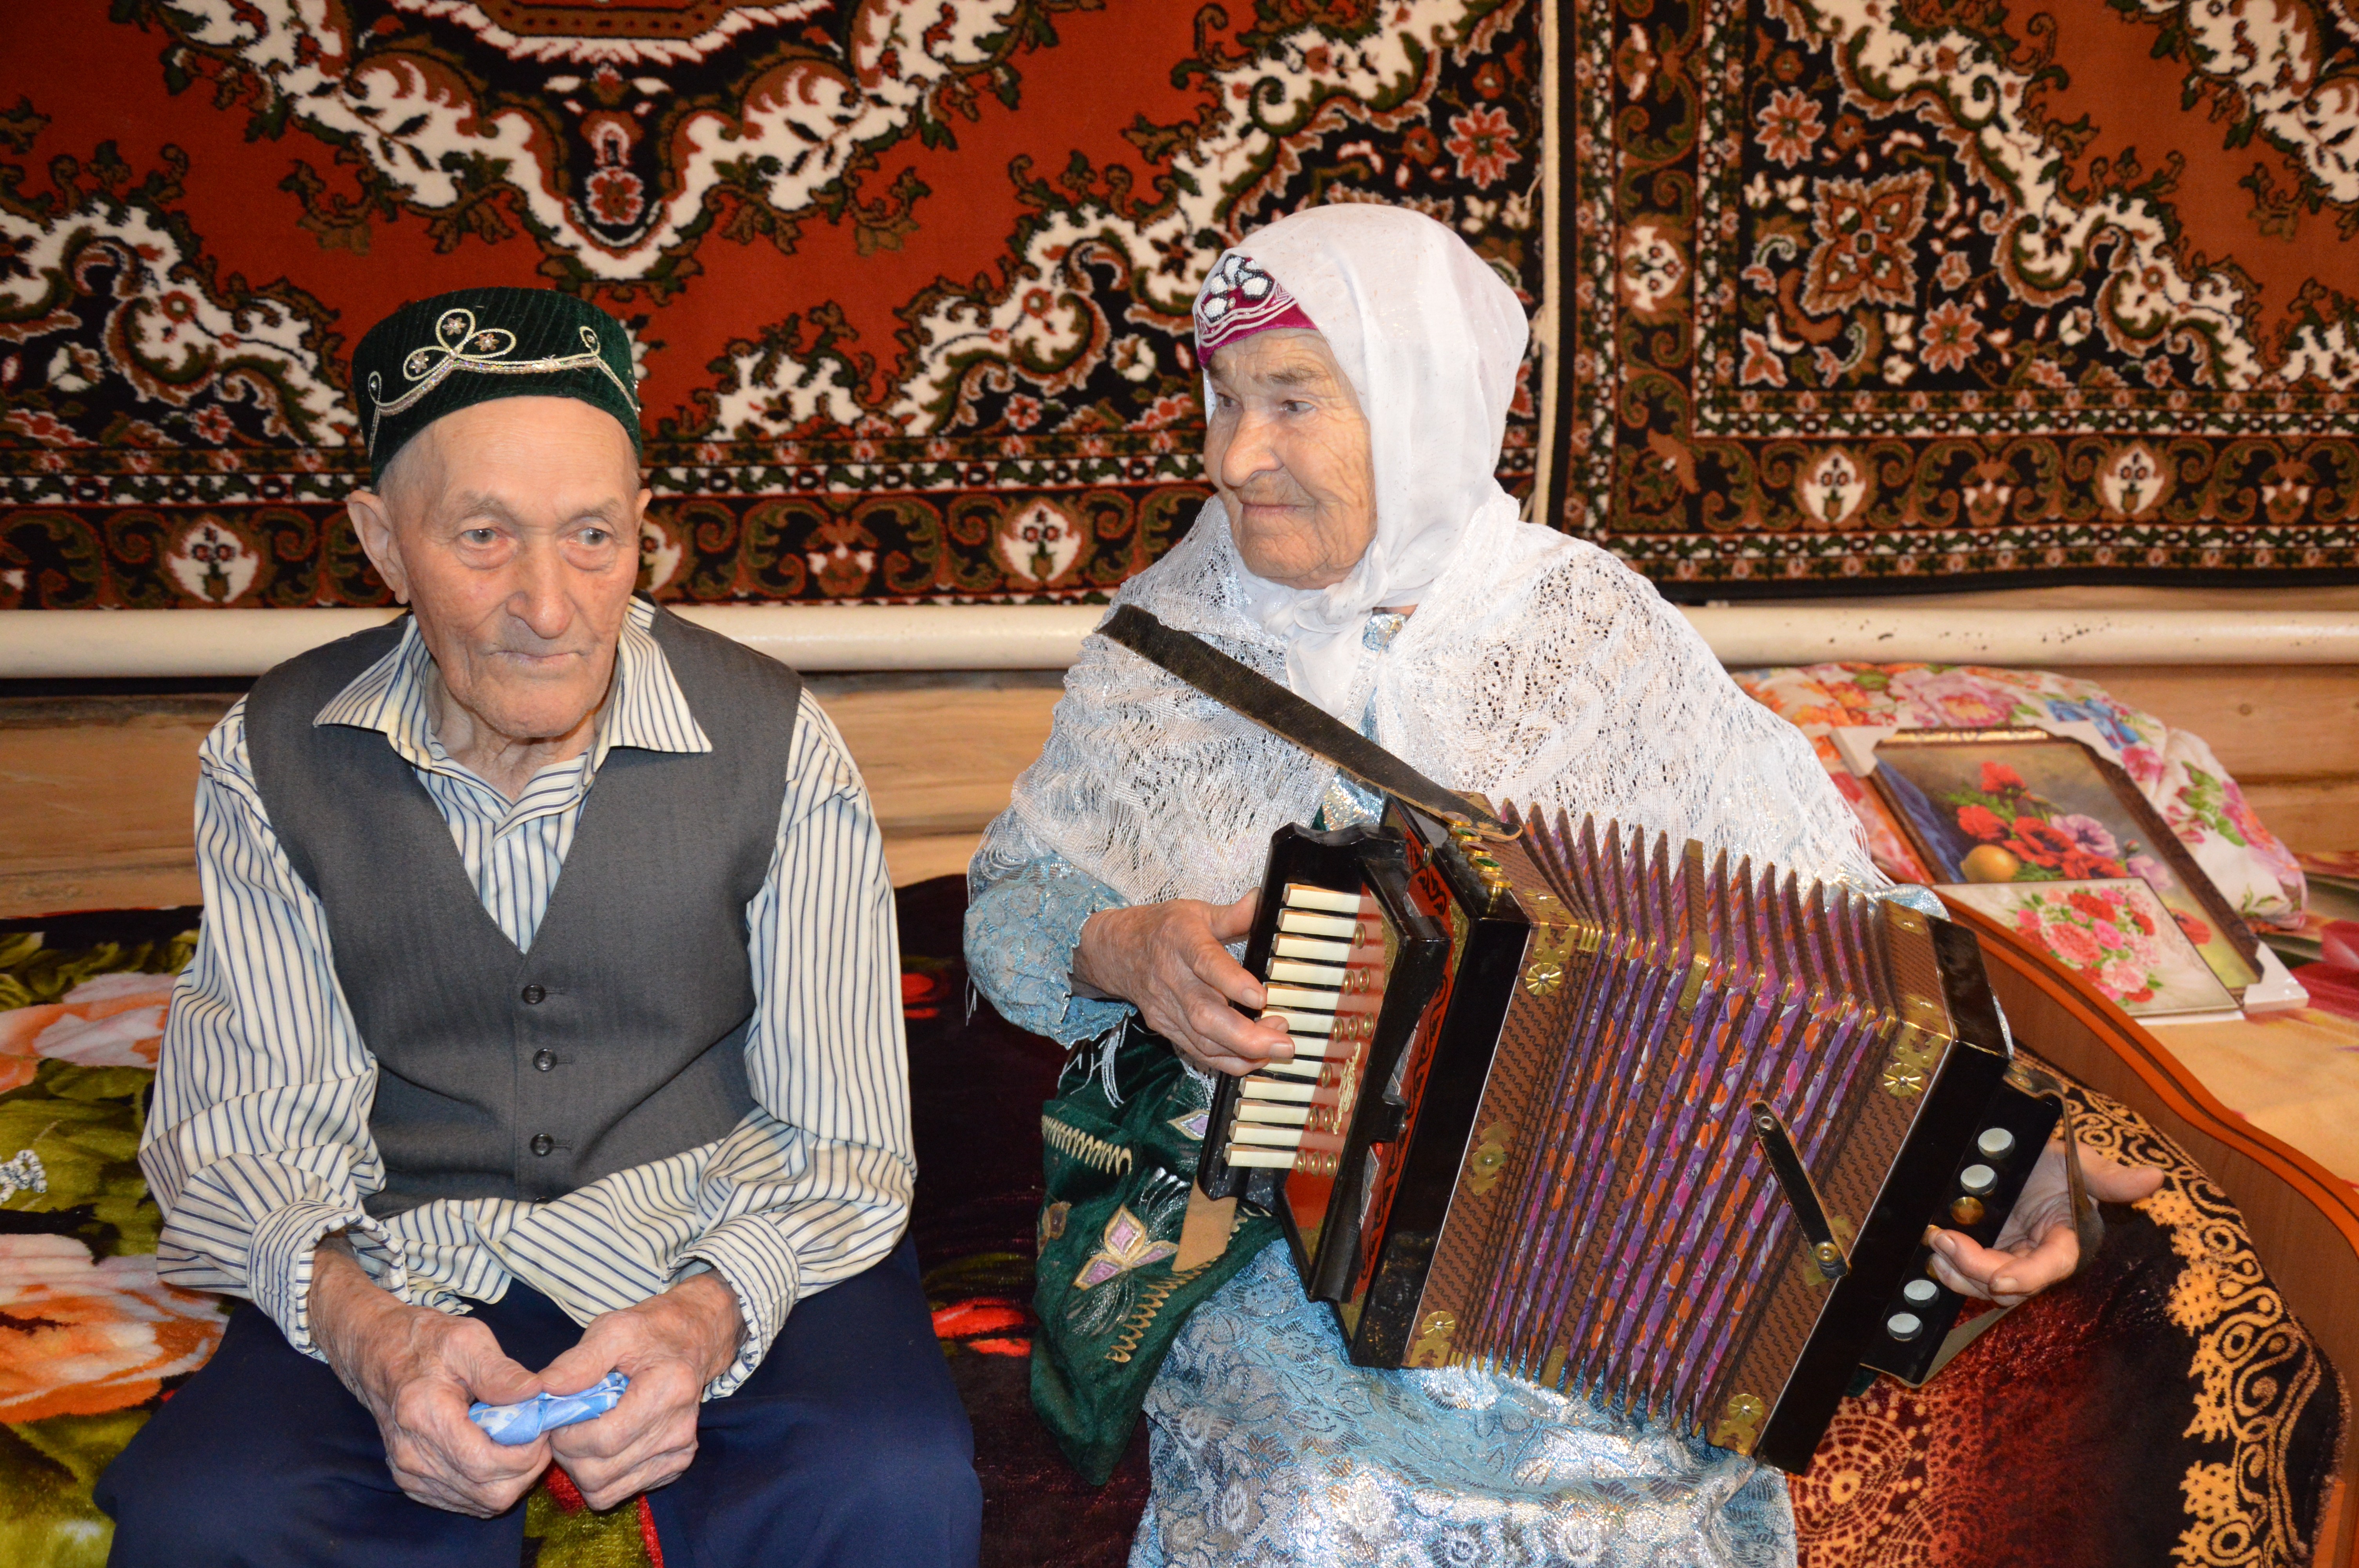 Слушать веселое татарском песни